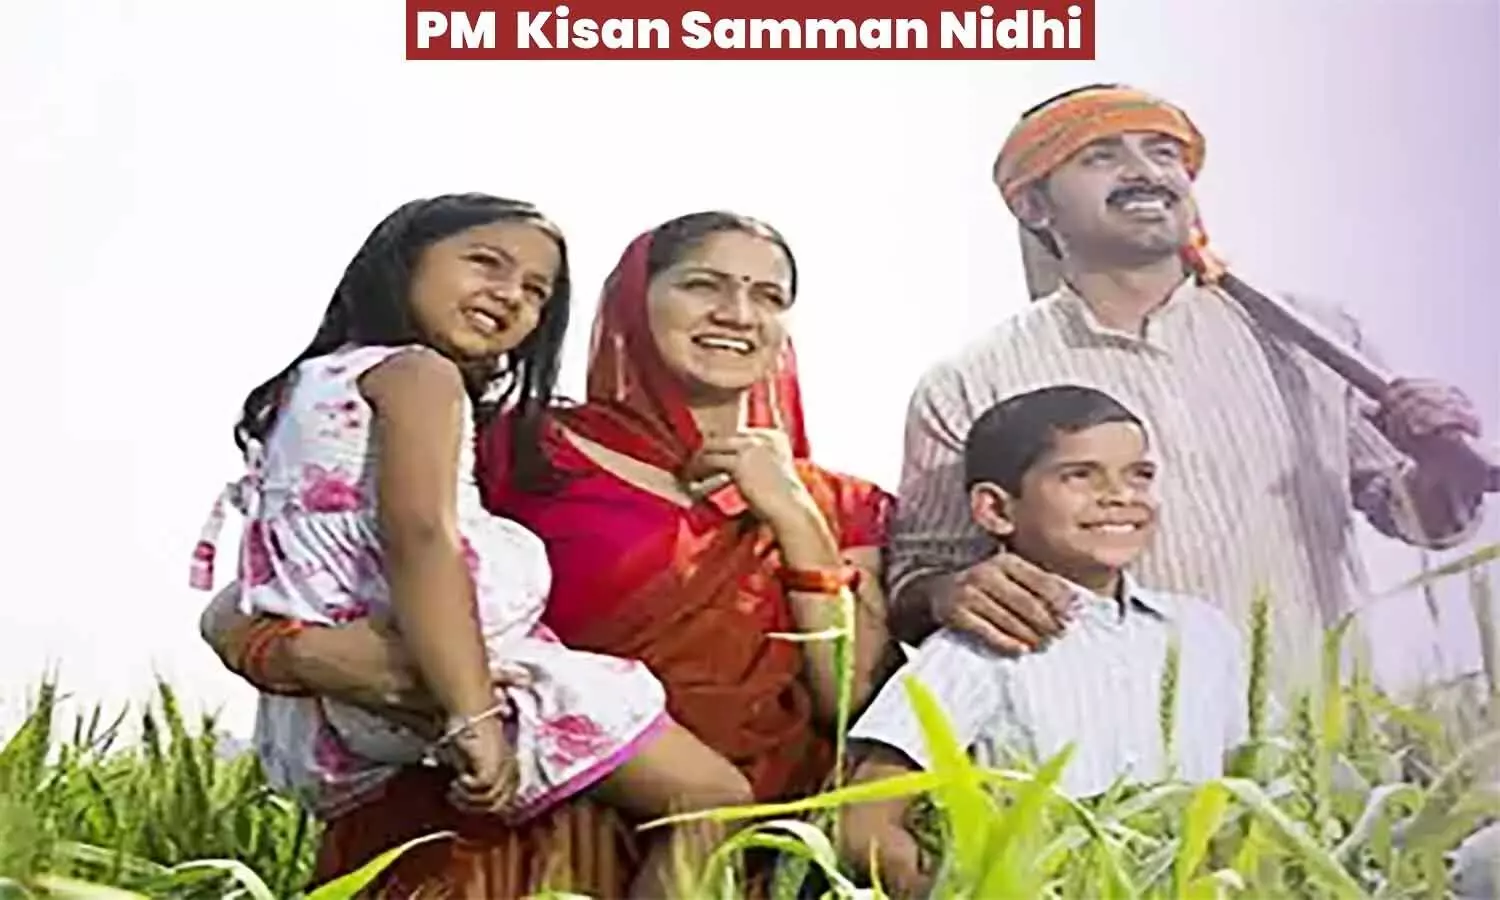 PM Kisan Samman Nidhi: एमपी के 15 लाख से ज्यादा किसानों के नाम सूची में जुड़ेंगे, इन्हें किया जाएगा शामिल